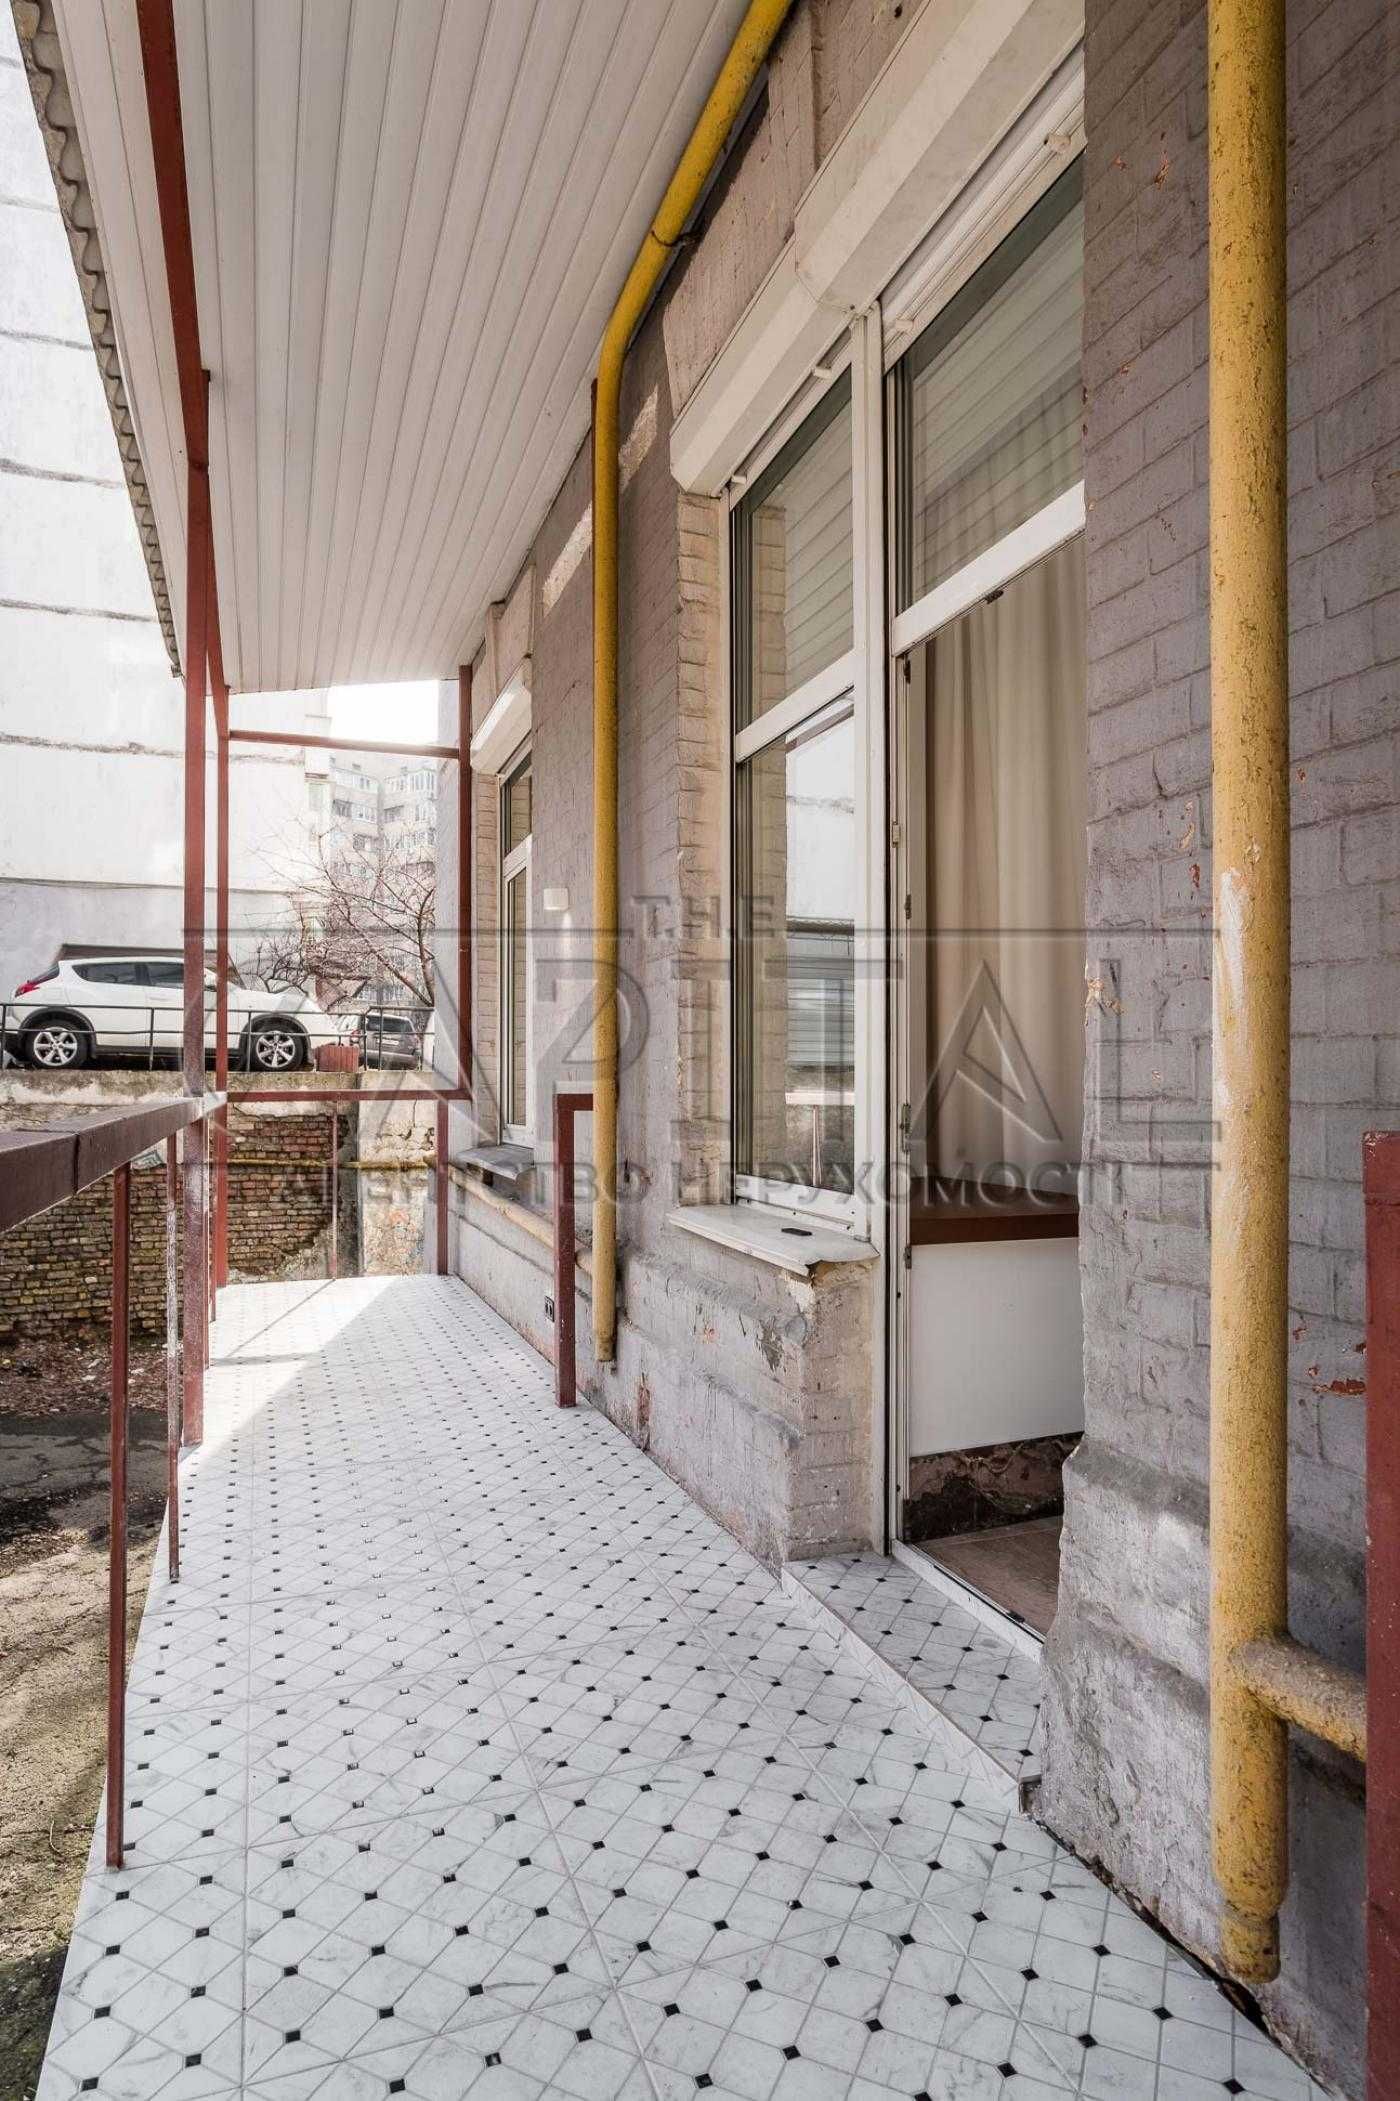 Саксаганського, оренда офіс з ремонтом, зняти комерційне приміщення